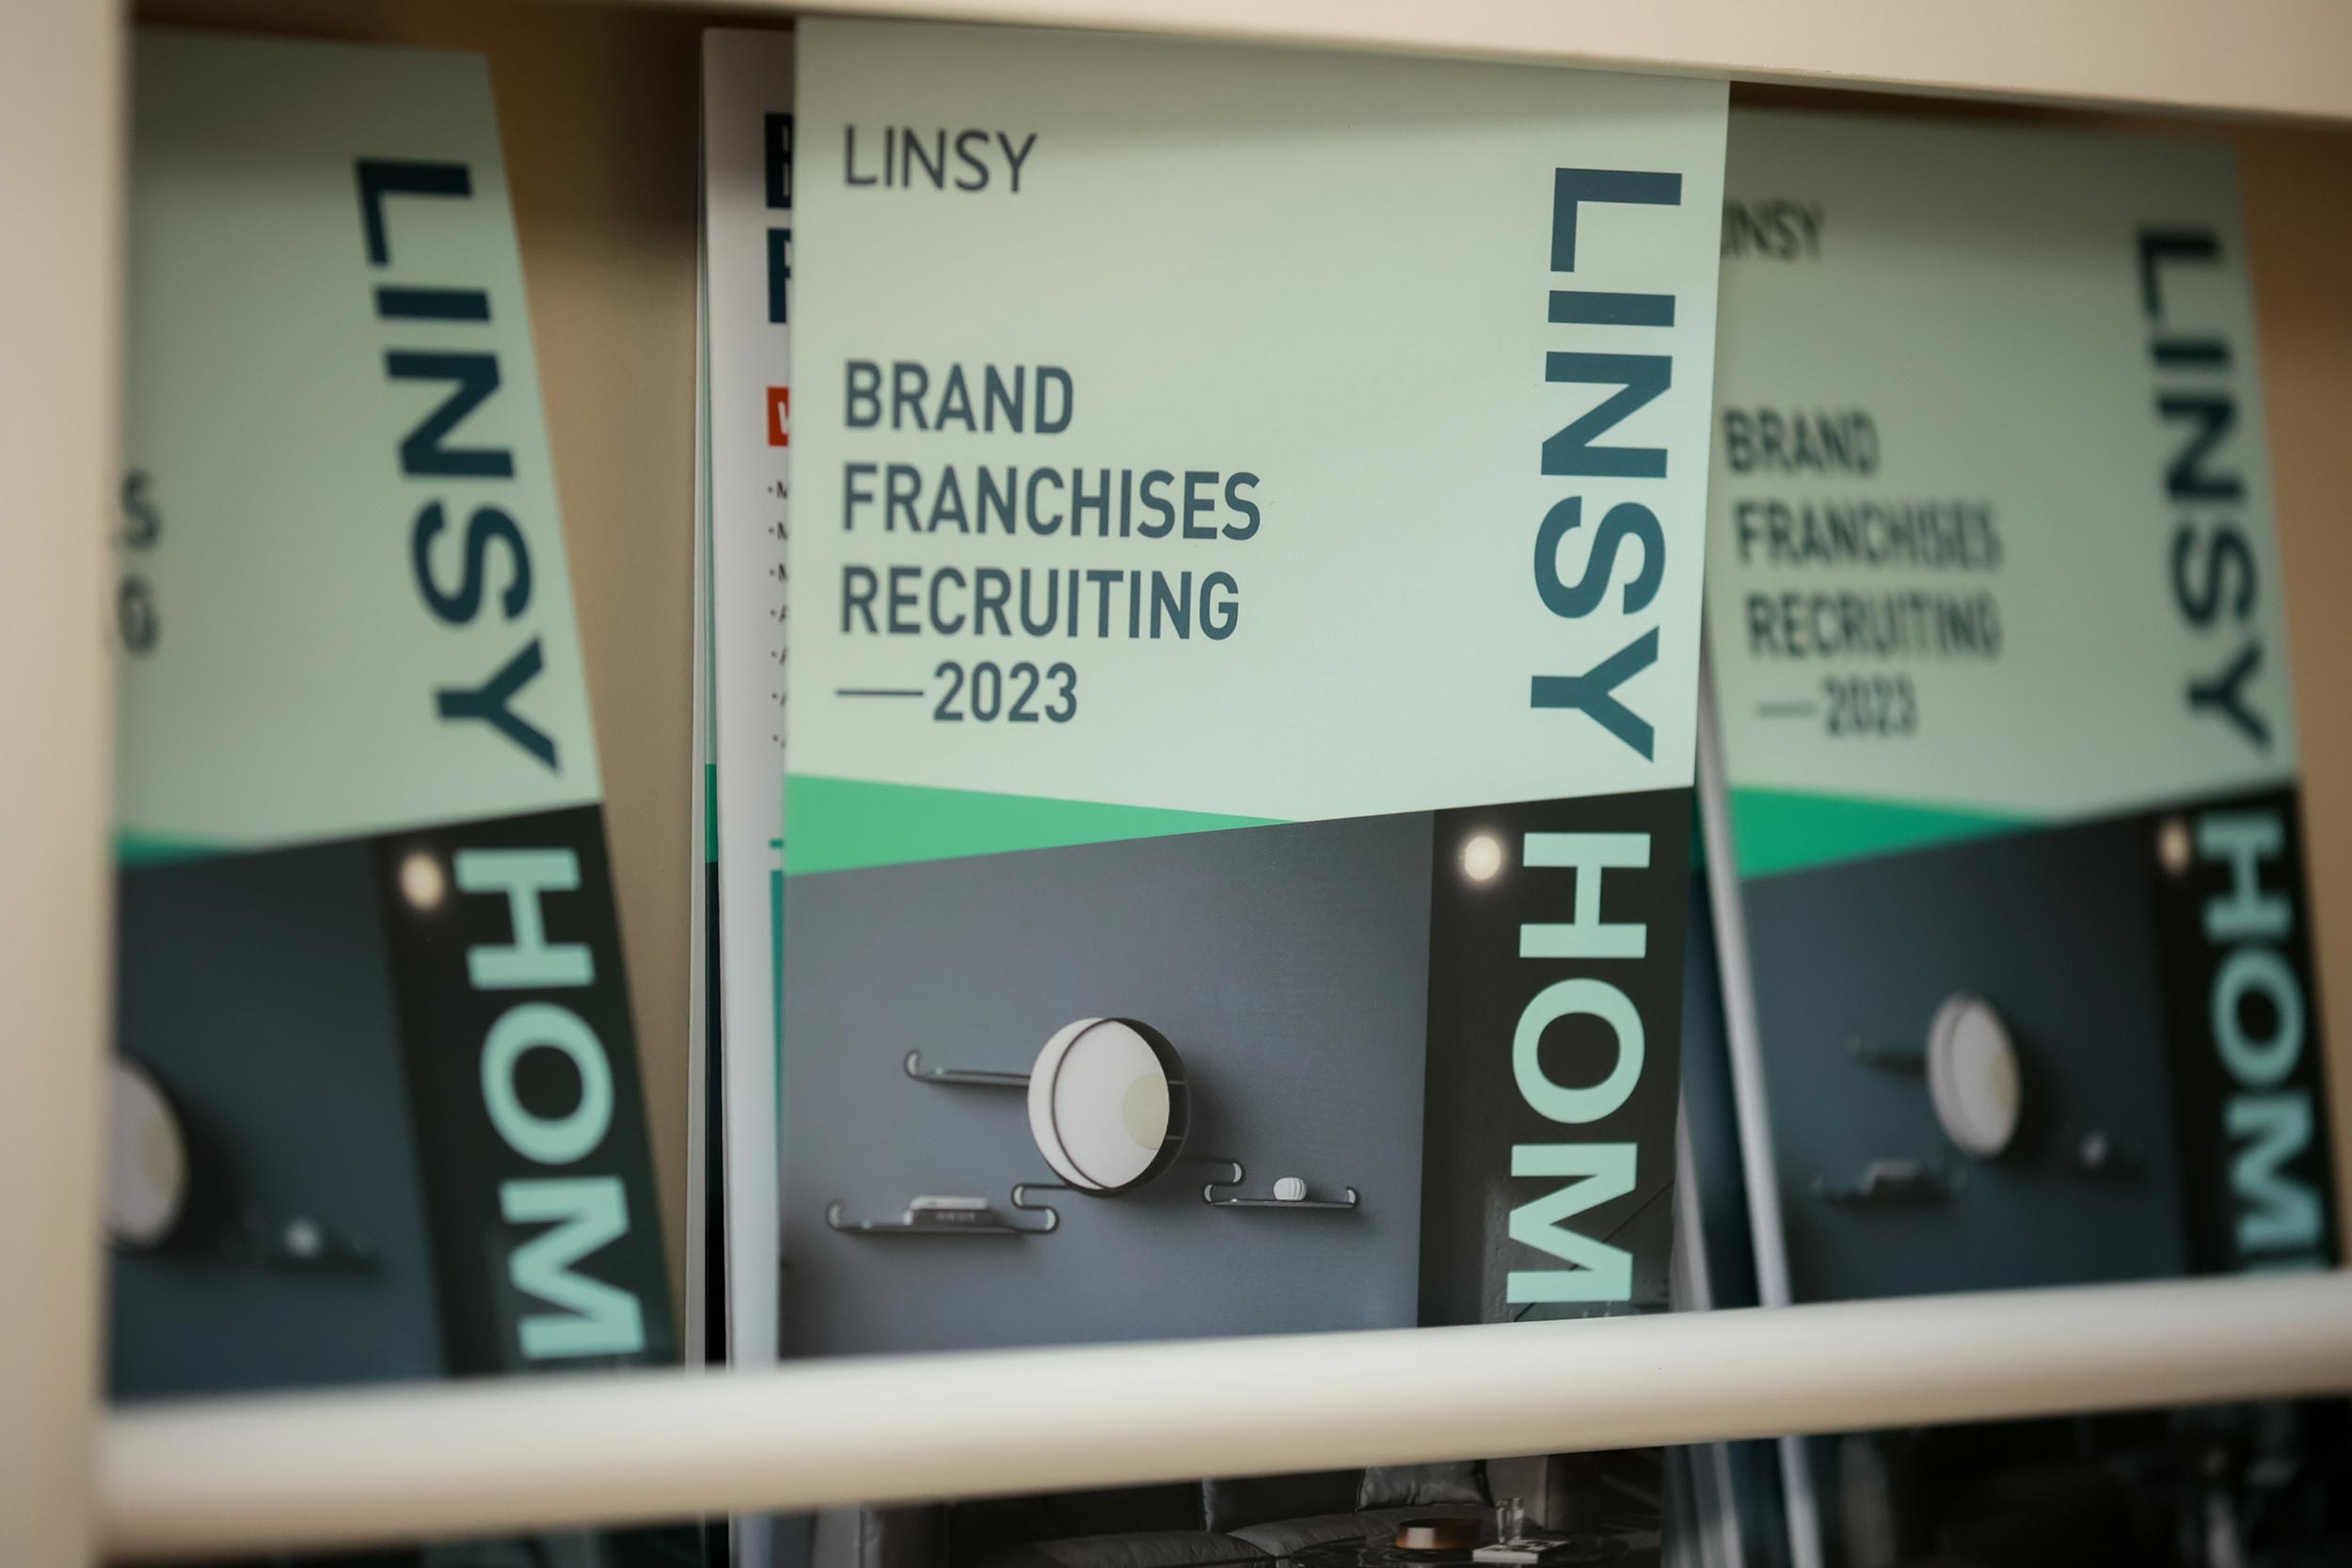 Desenvolvimento da marca LINSY